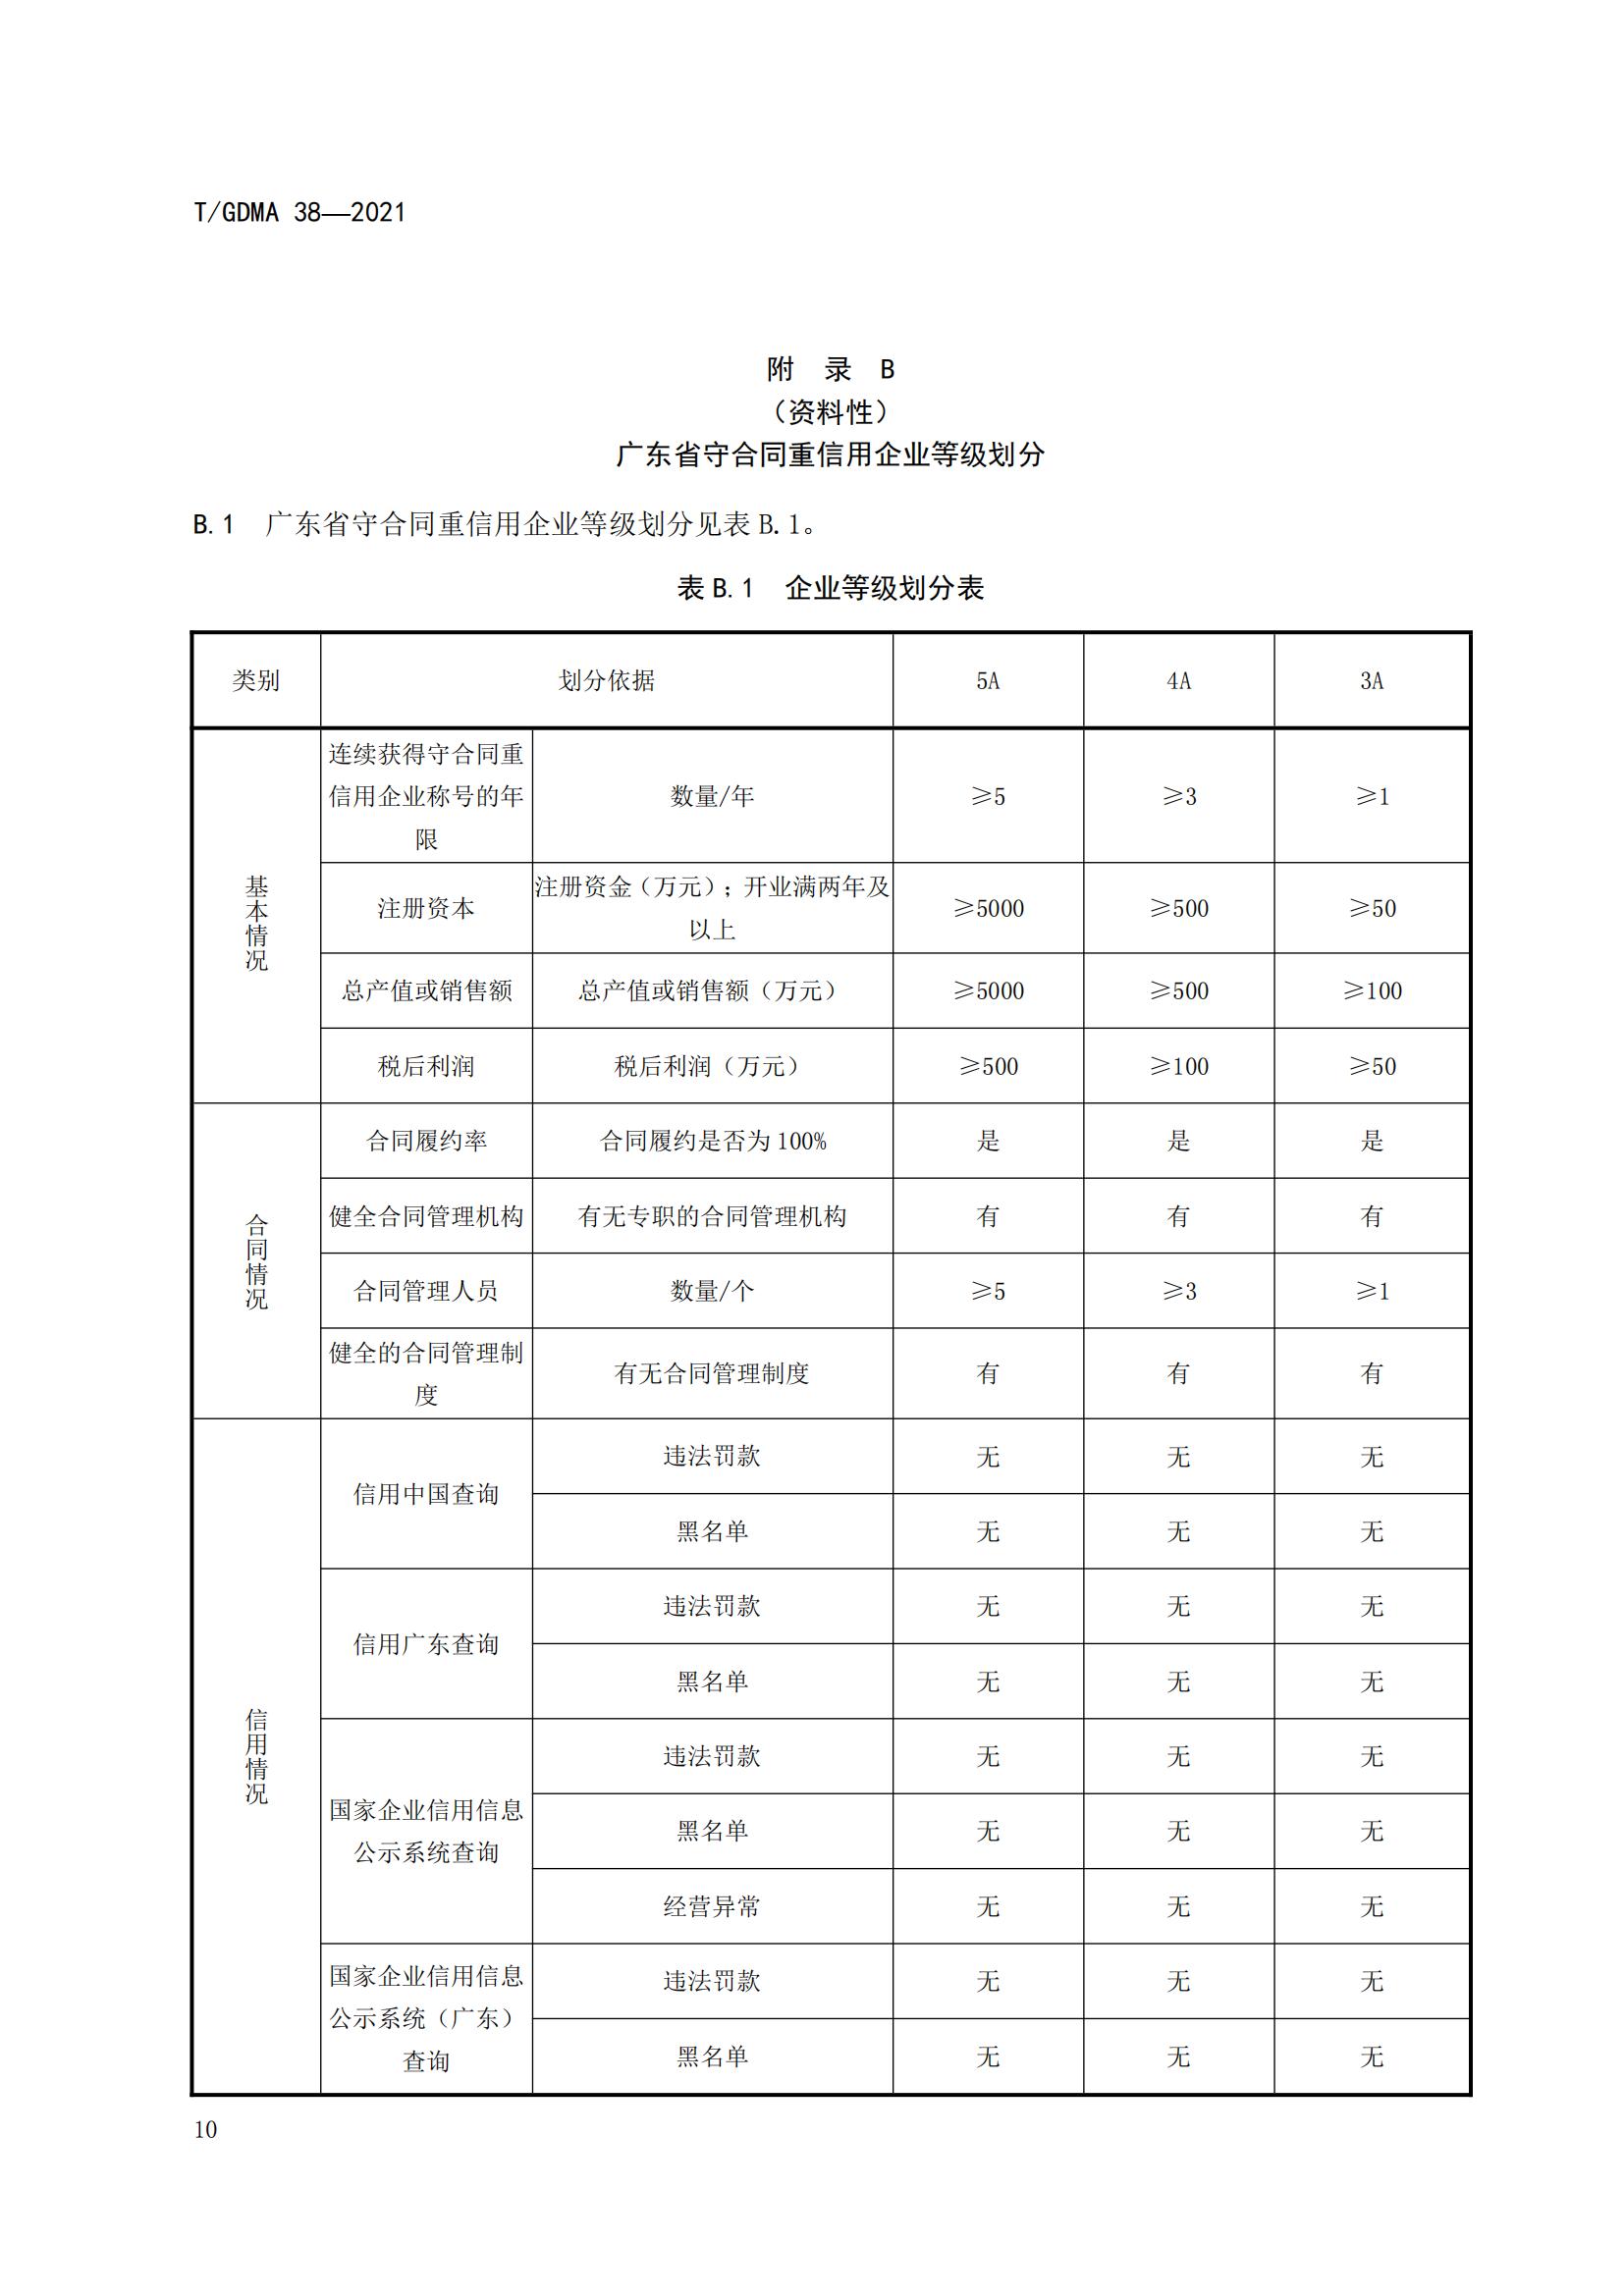 TGDMA 38 广东省守合同重信用企业等级评定规范-发布稿_13.jpg